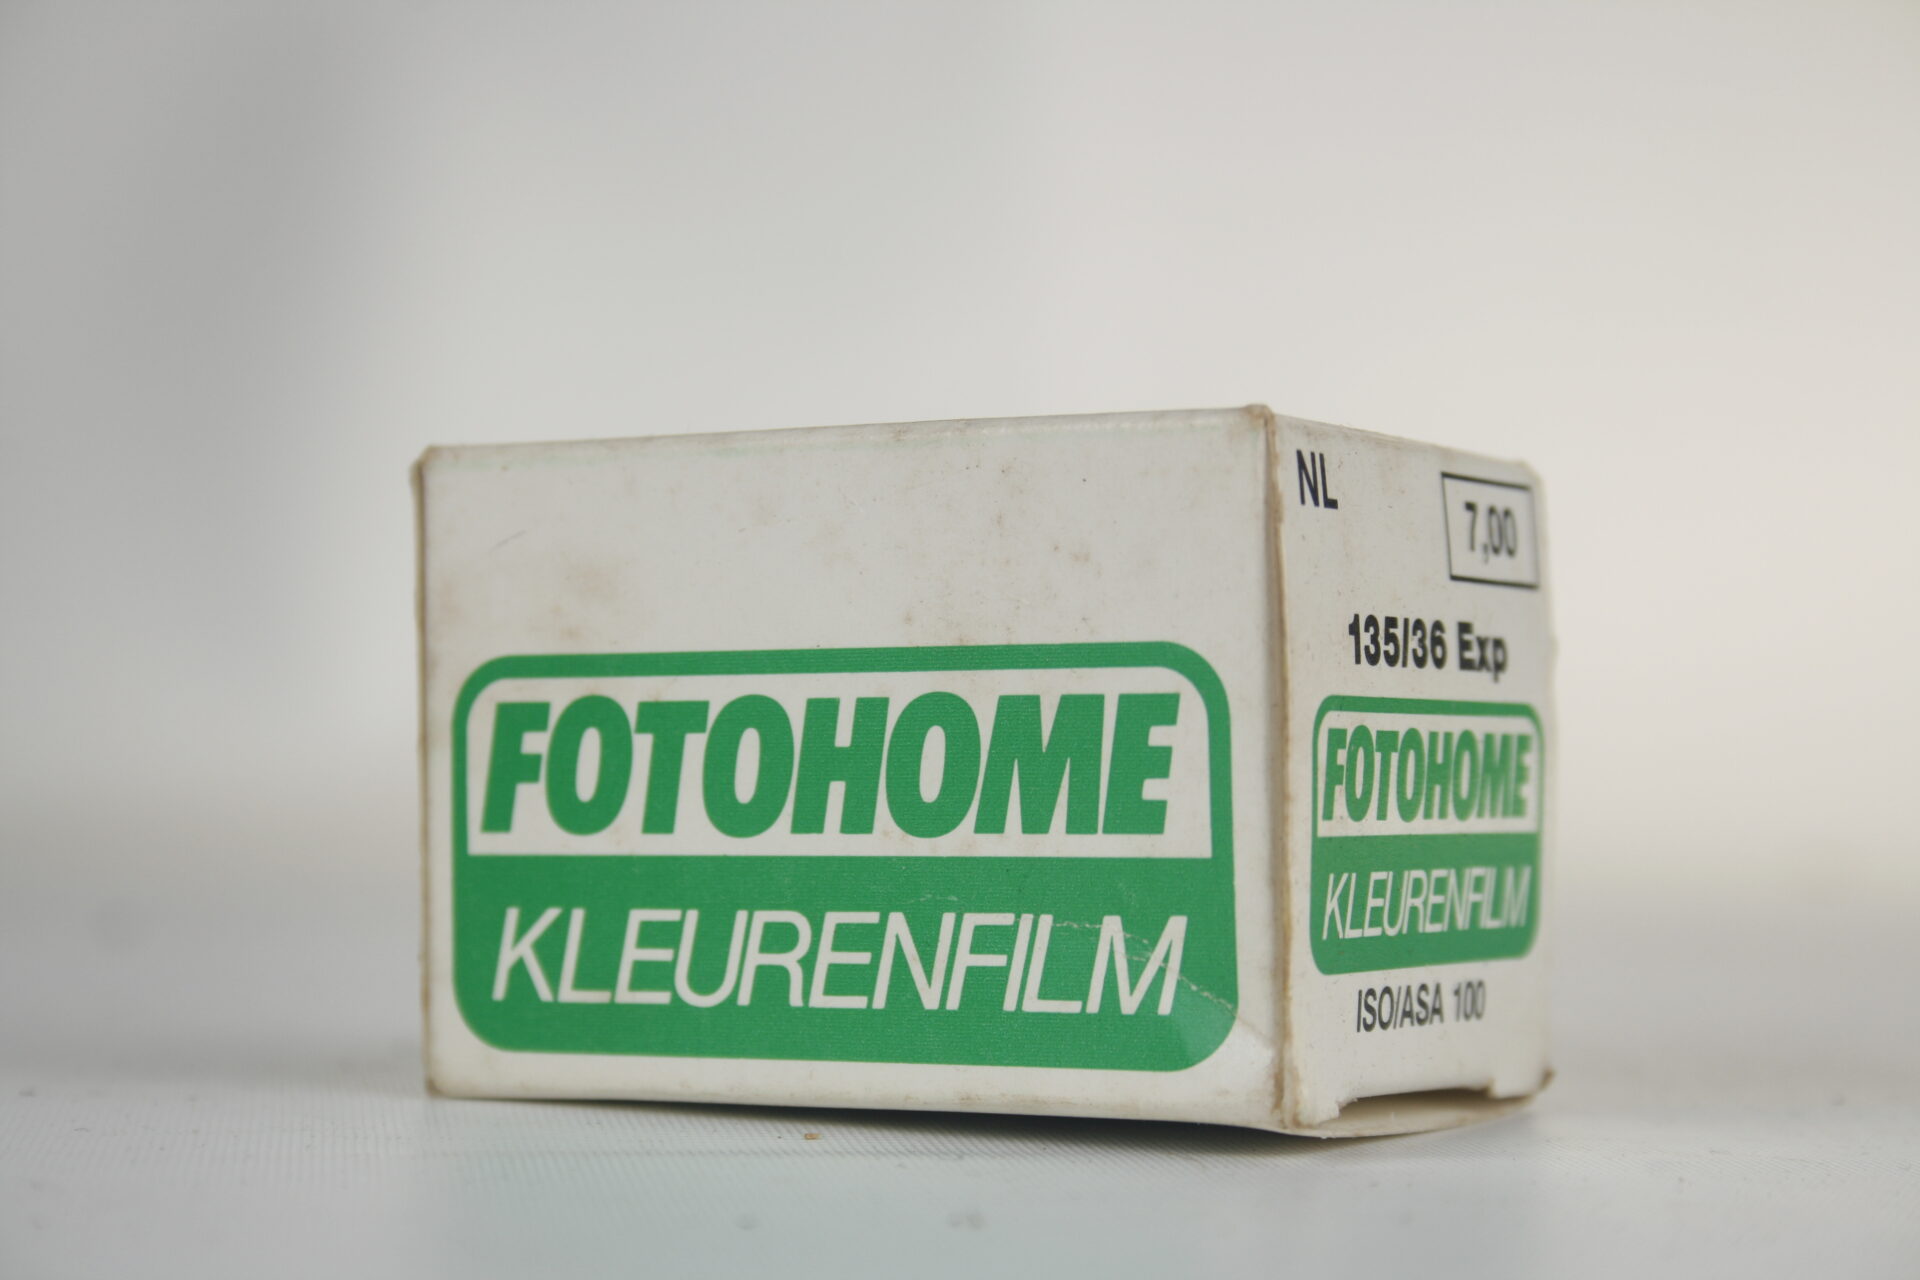 Fotohome kleurenfilm